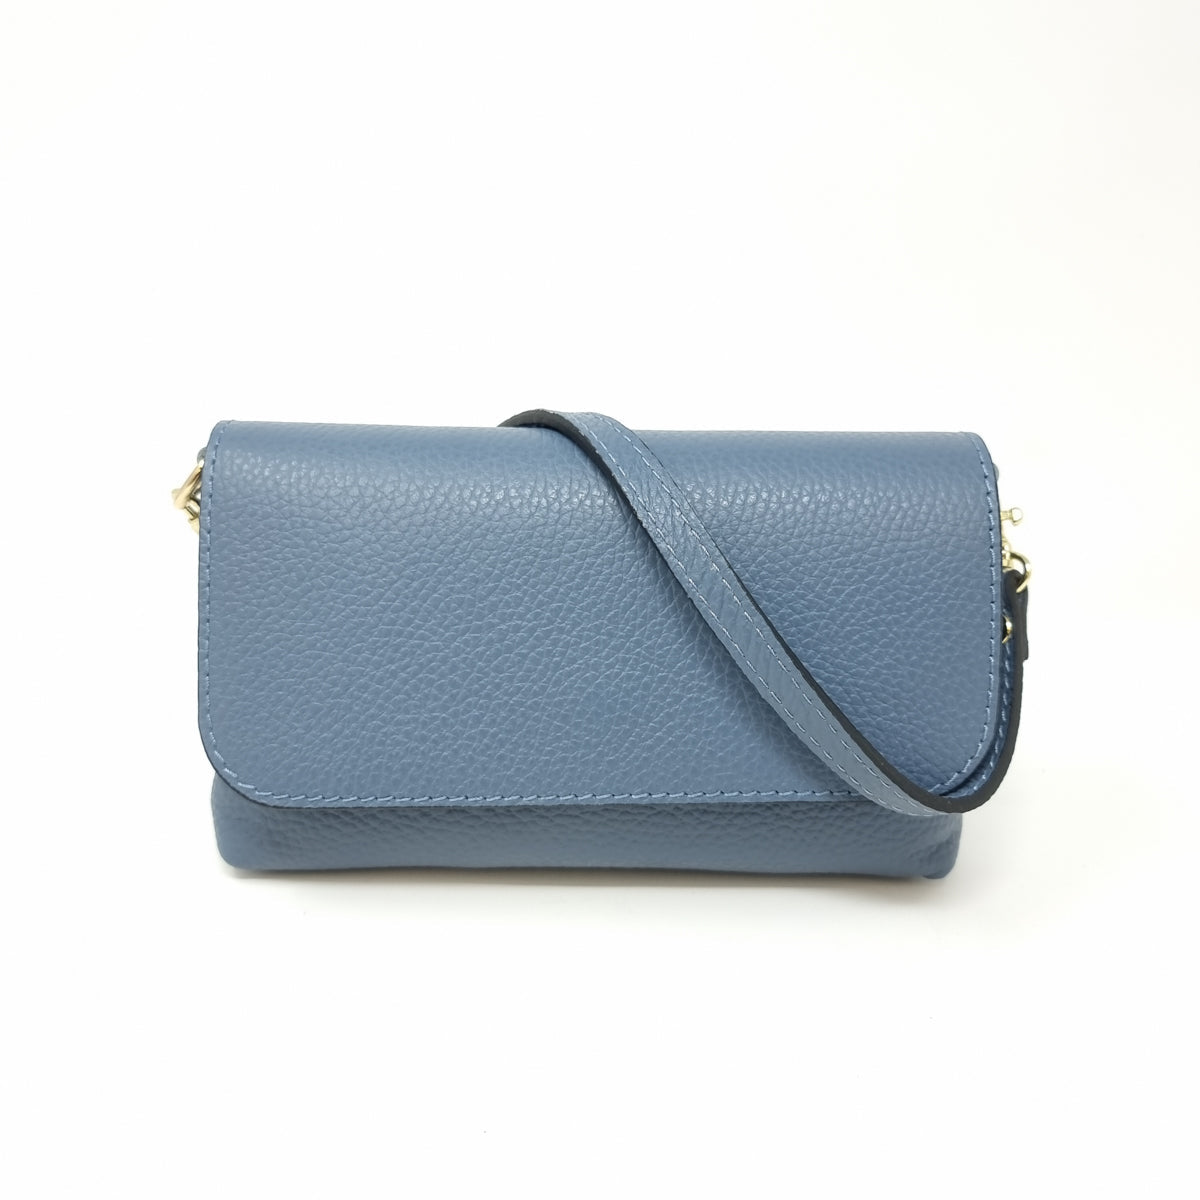 Small Foldover Bag in Denim Blue